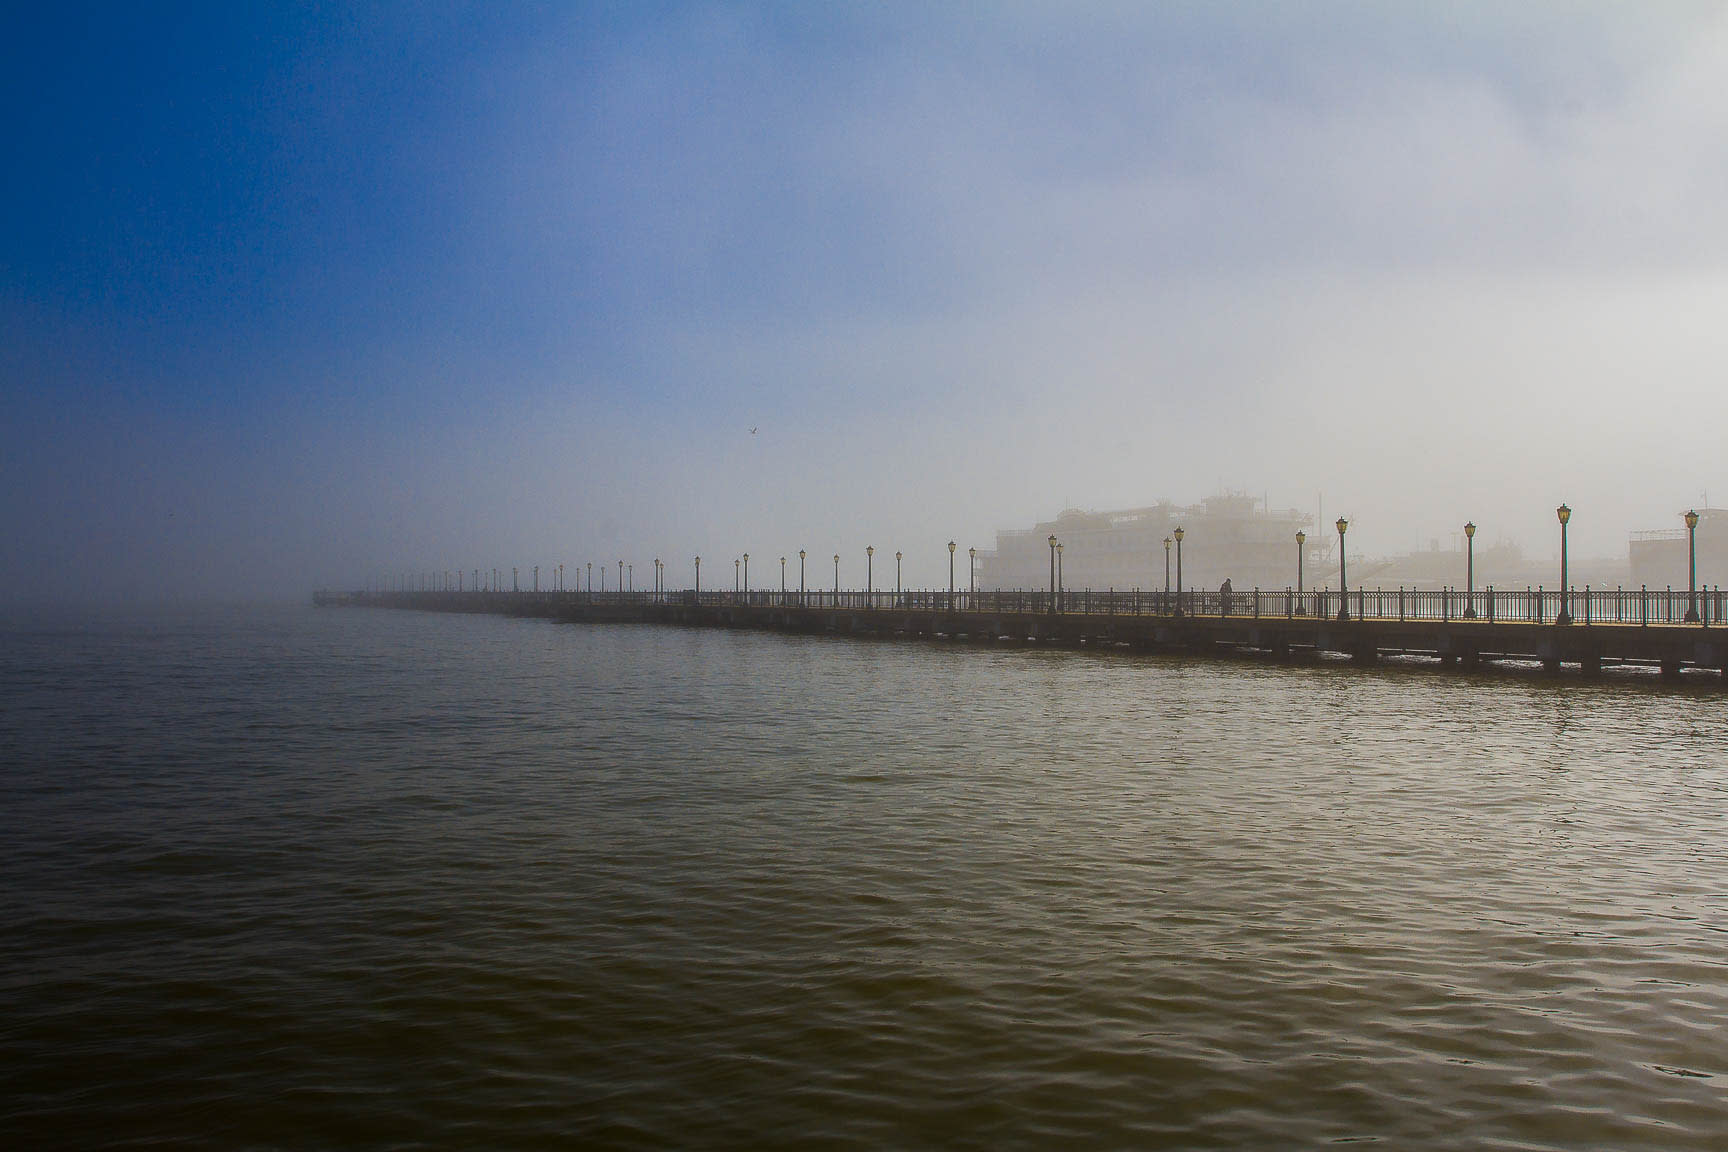 Bridge on a foggy day